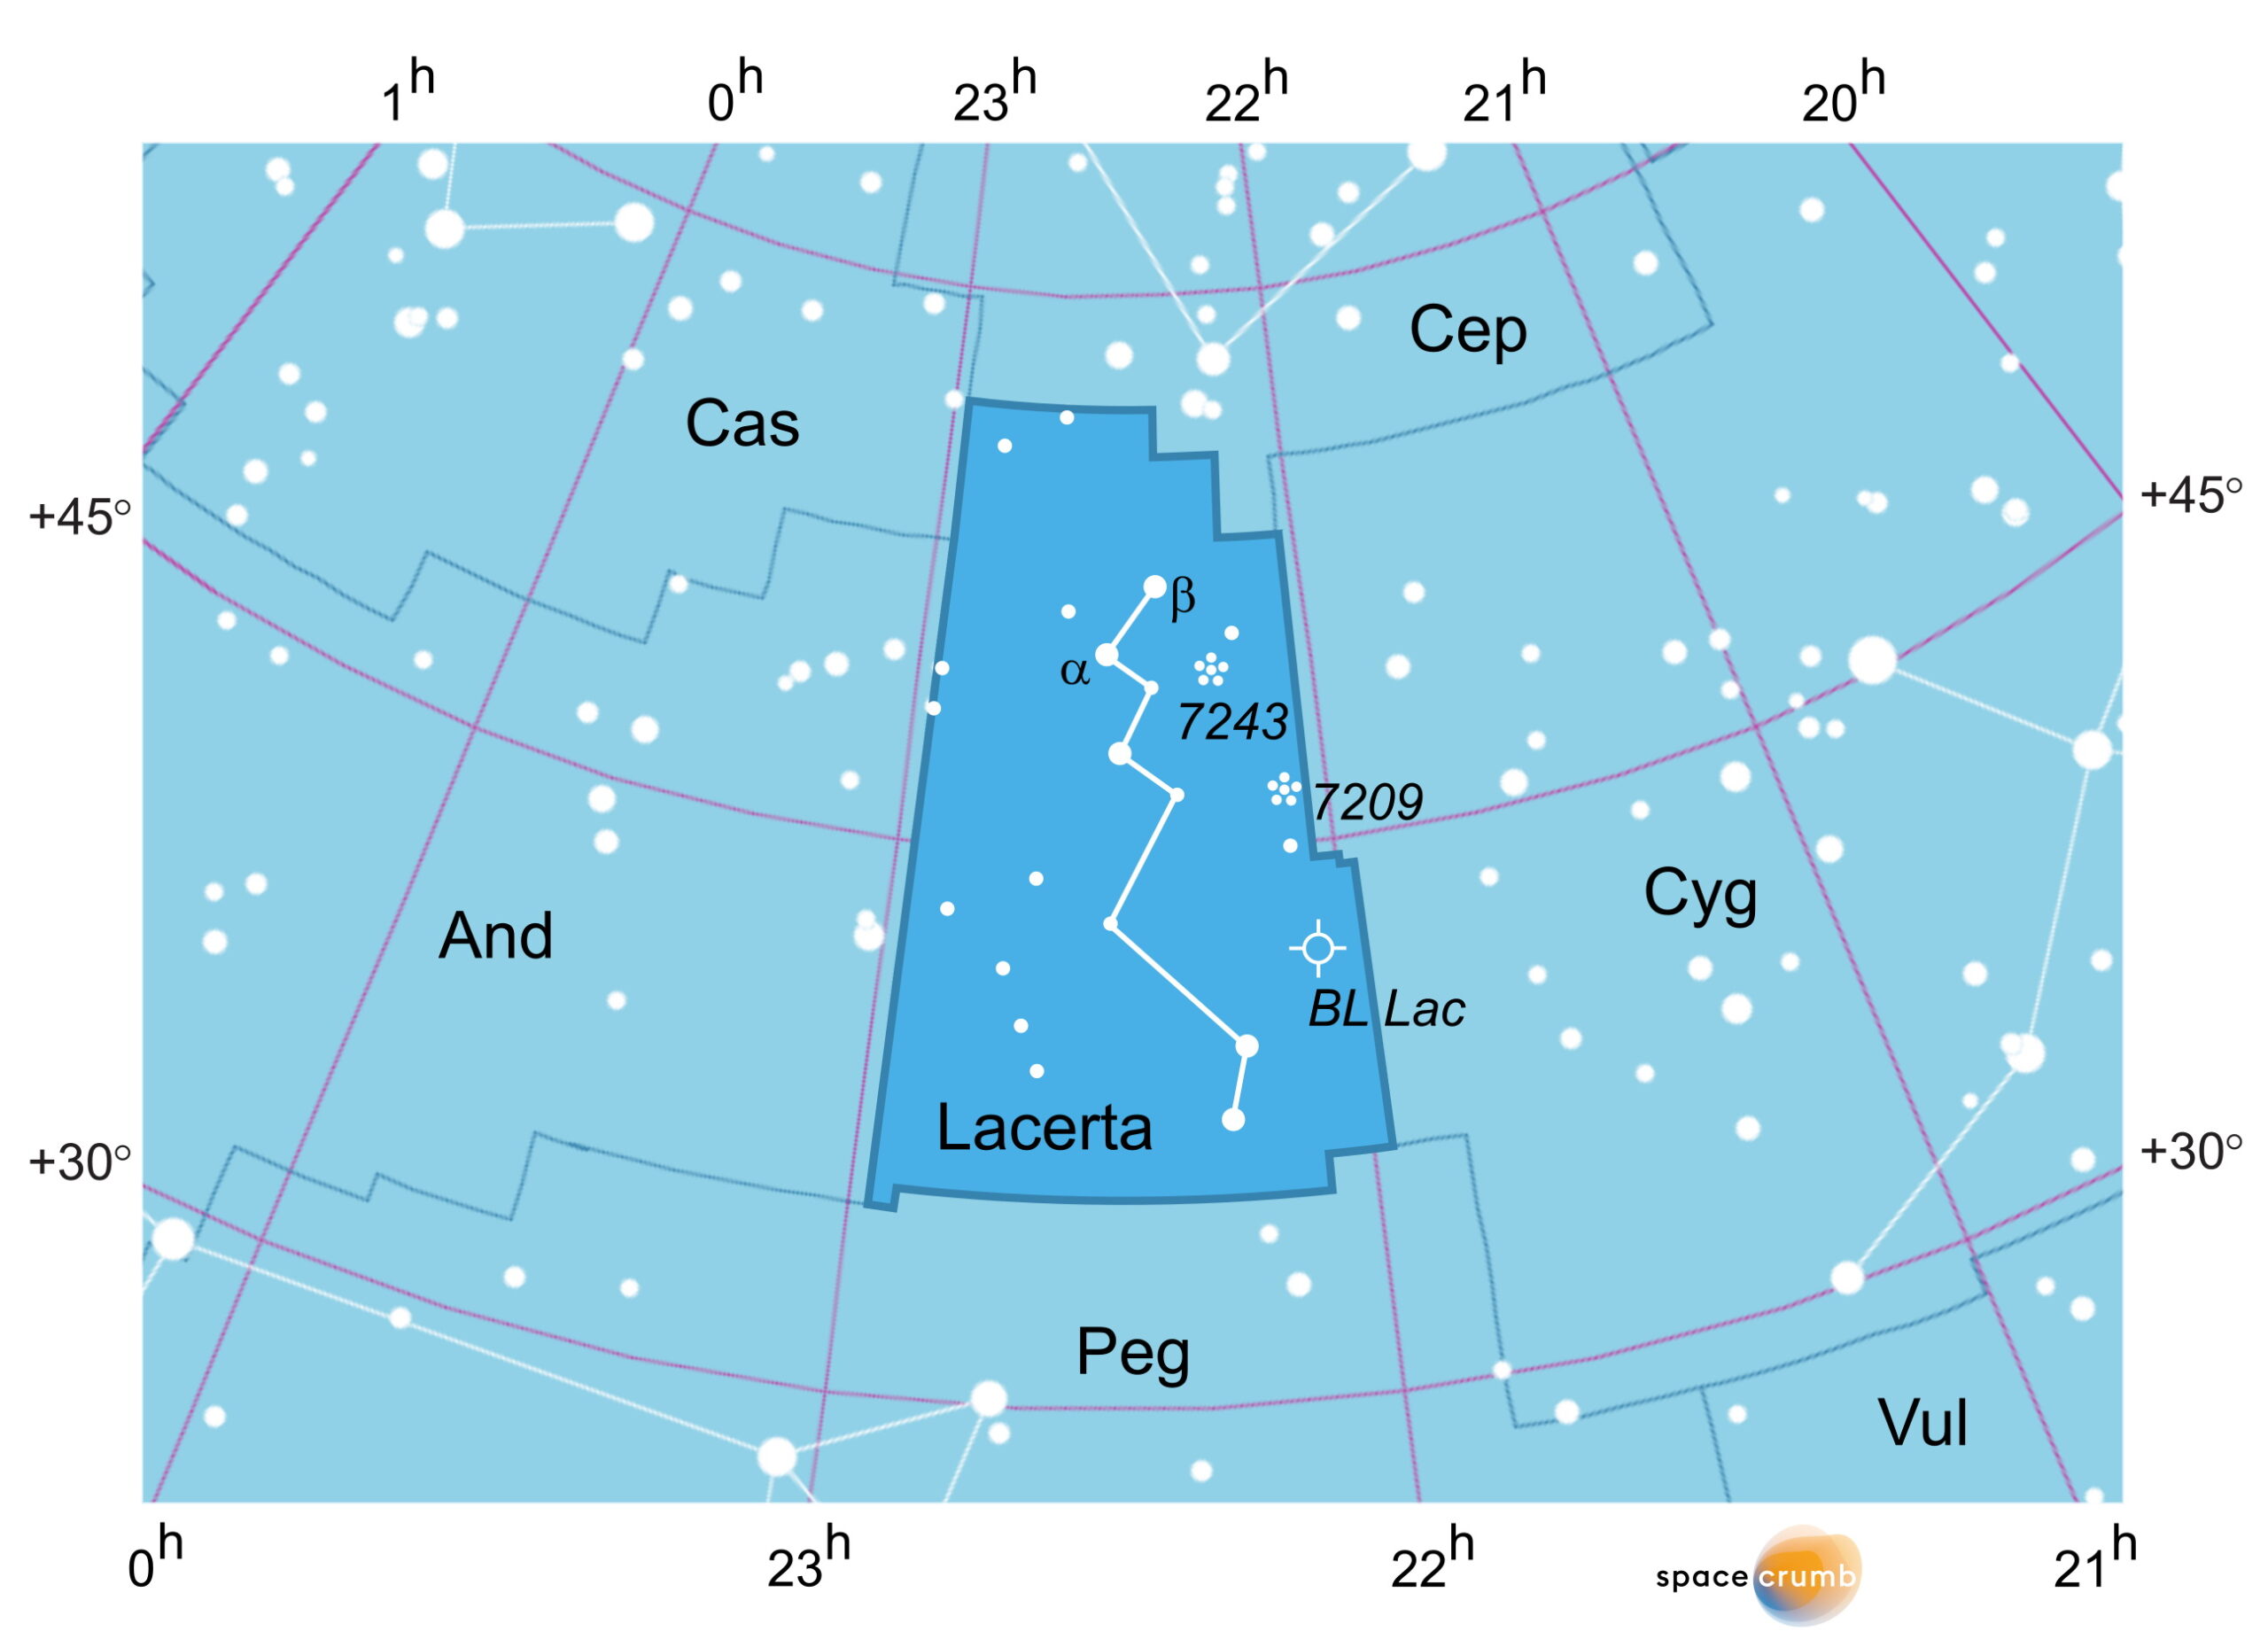 Eine mit Koordinaten versehene grafische Karte eines Himmelsausschnitts zeigt weiße Sterne auf hellblauem Hintergrund. Die Fläche, die das Sternbild Eidechse in der Bildmitte einnimmt, ist dunkelblau hervorgehoben.